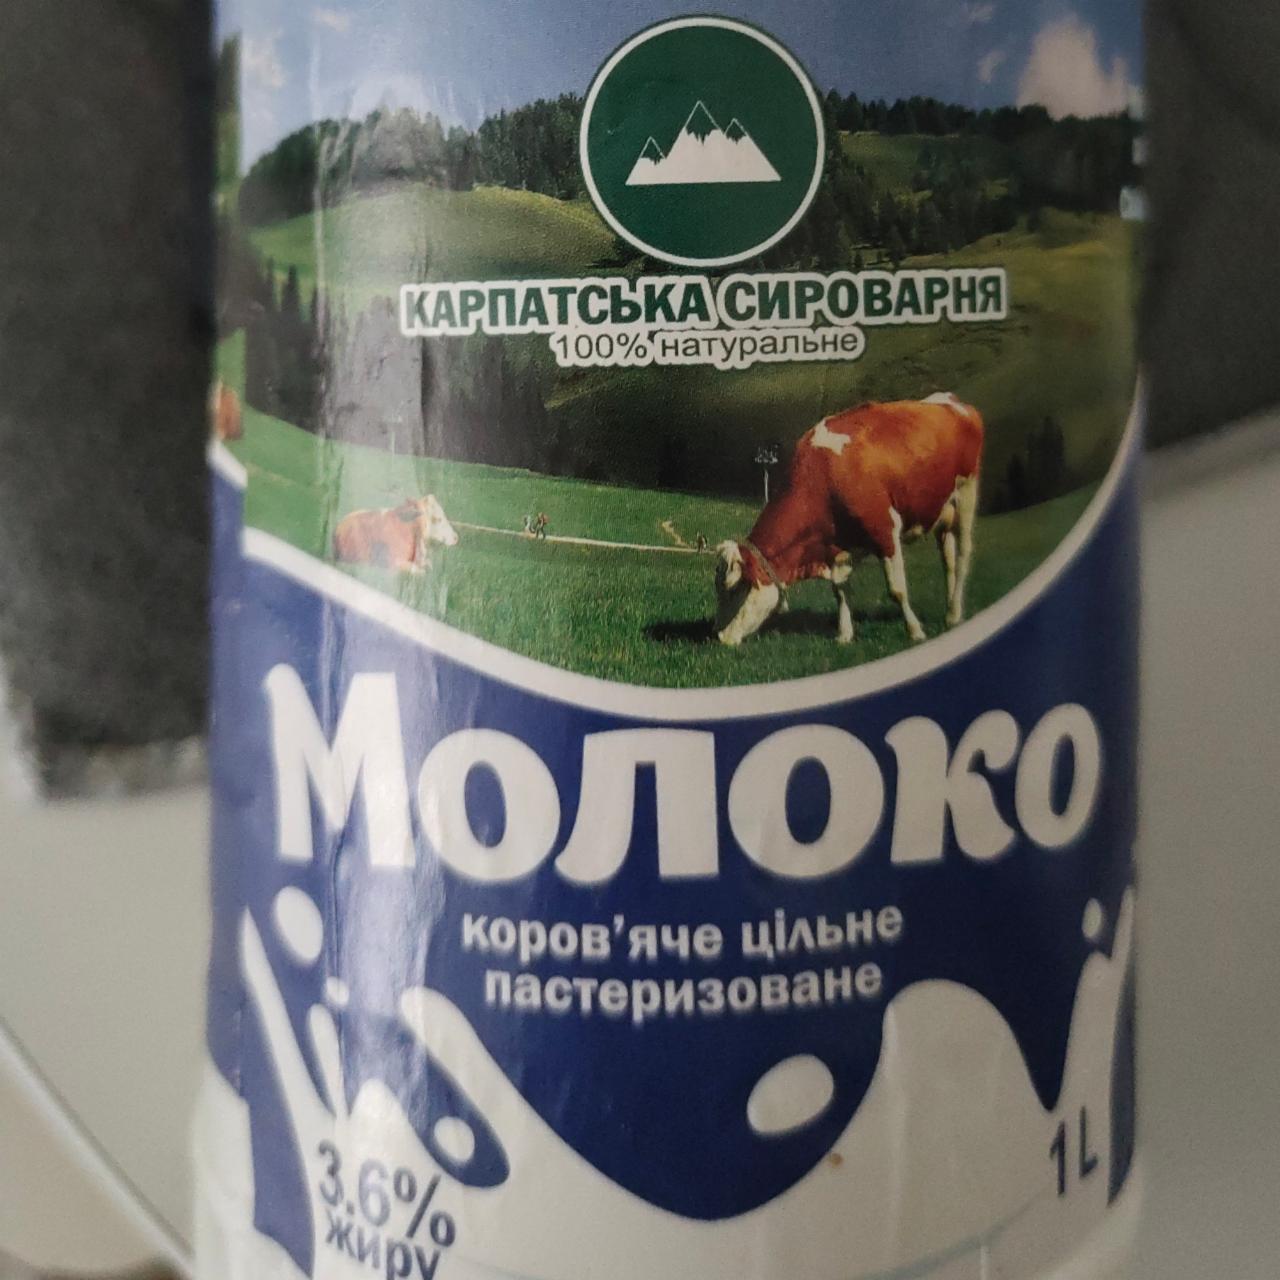 Фото - Молоко 3.6% цільне пастеризоване Карпатська сироварня